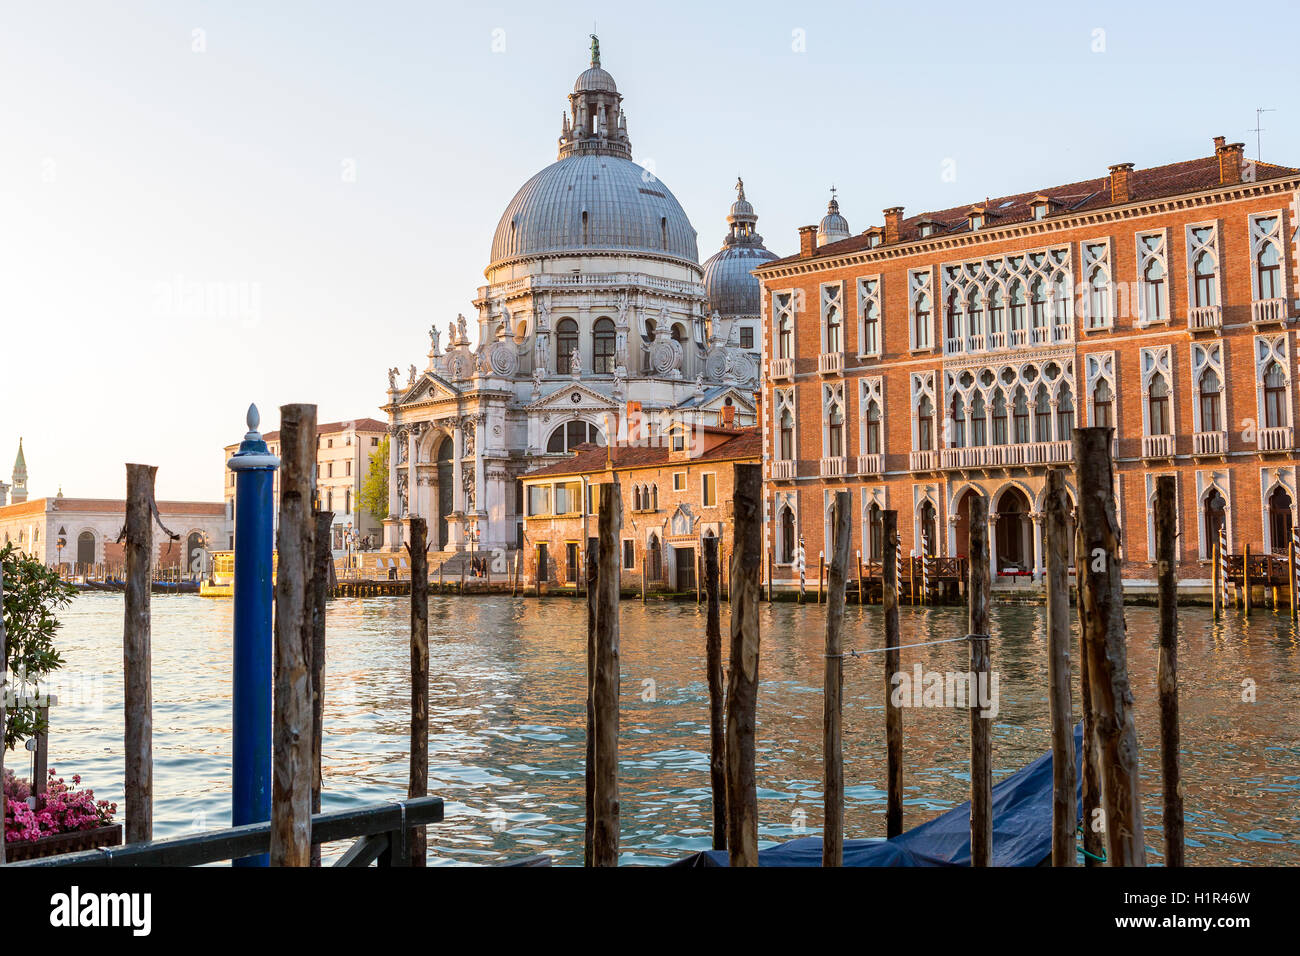 Basilica di Santa Maria della Salute, Grand Canal at Venice, Veneto, Italy, Europe. Stock Photo